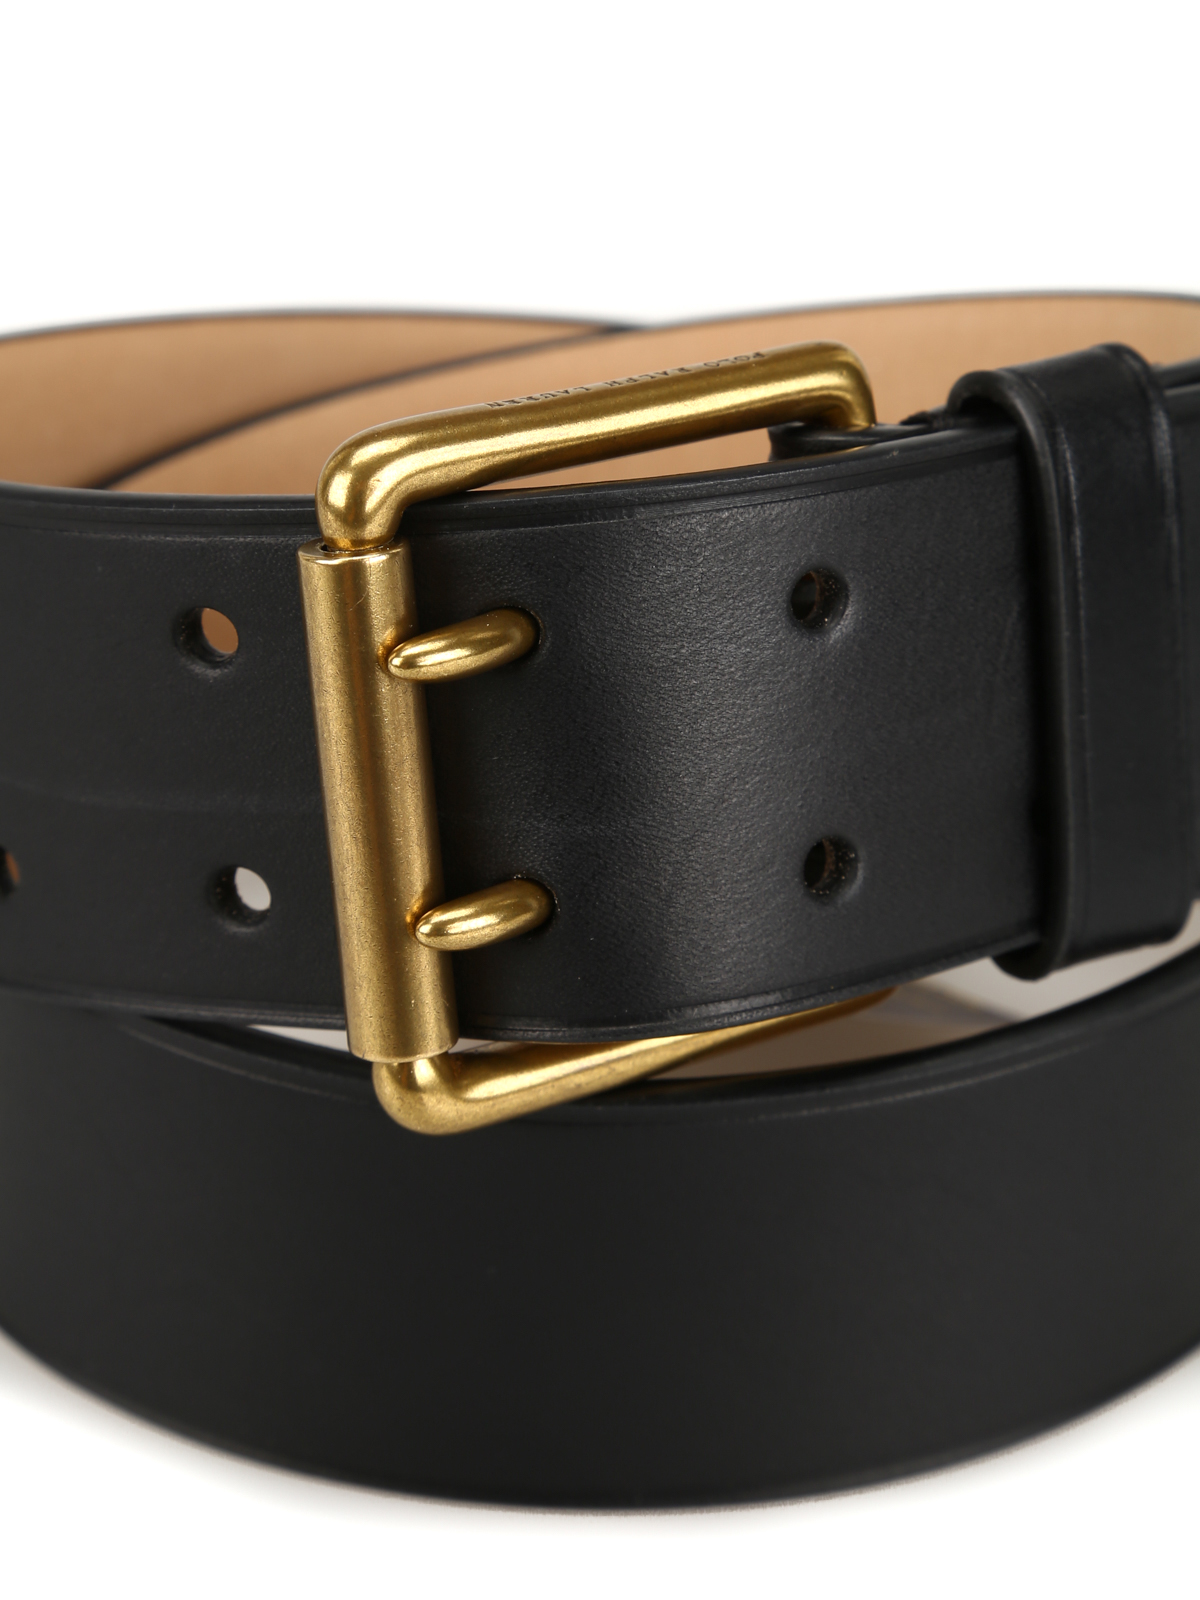 Aprender acerca 64+ imagen polo ralph lauren leather belt - Abzlocal.mx